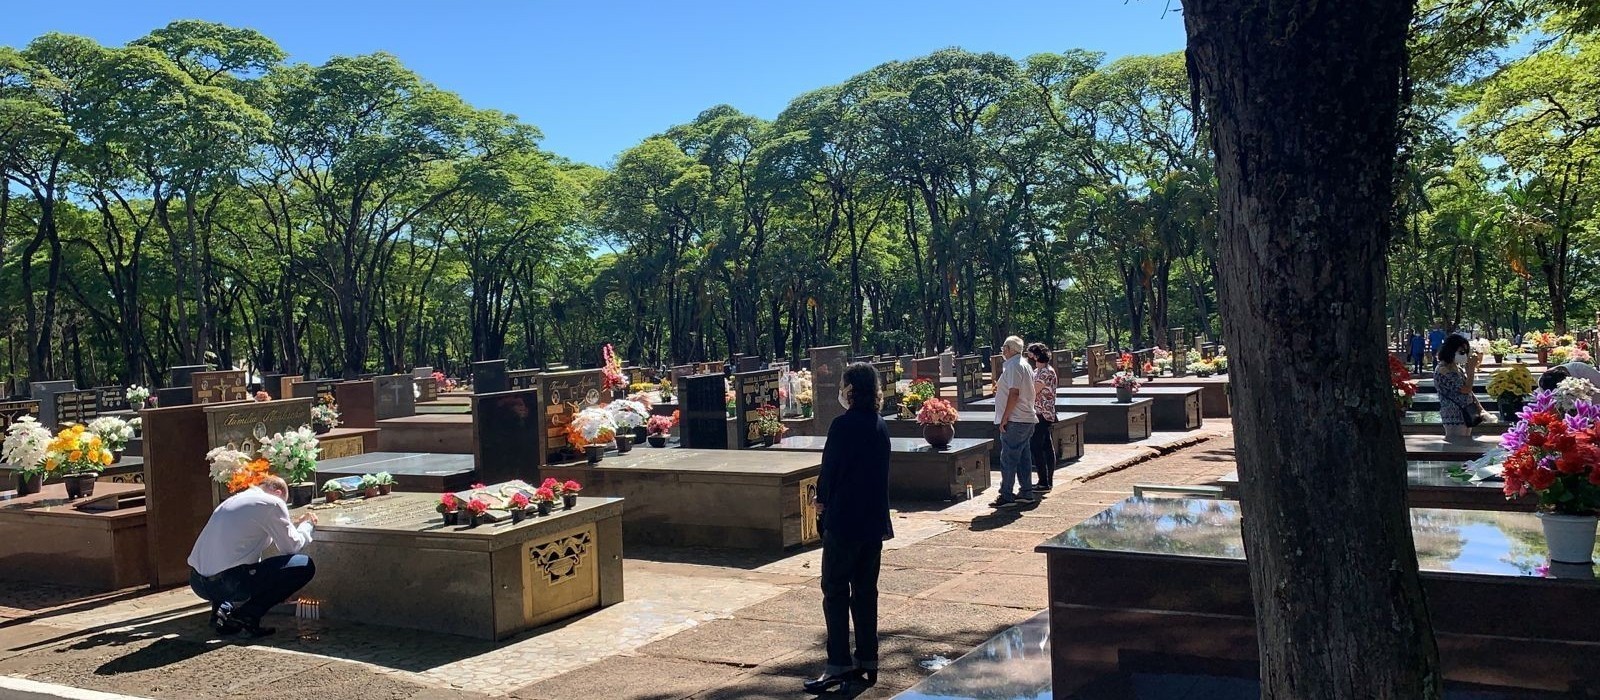 Venda de sepulturas está suspensa no Cemitério Municipal de Maringá